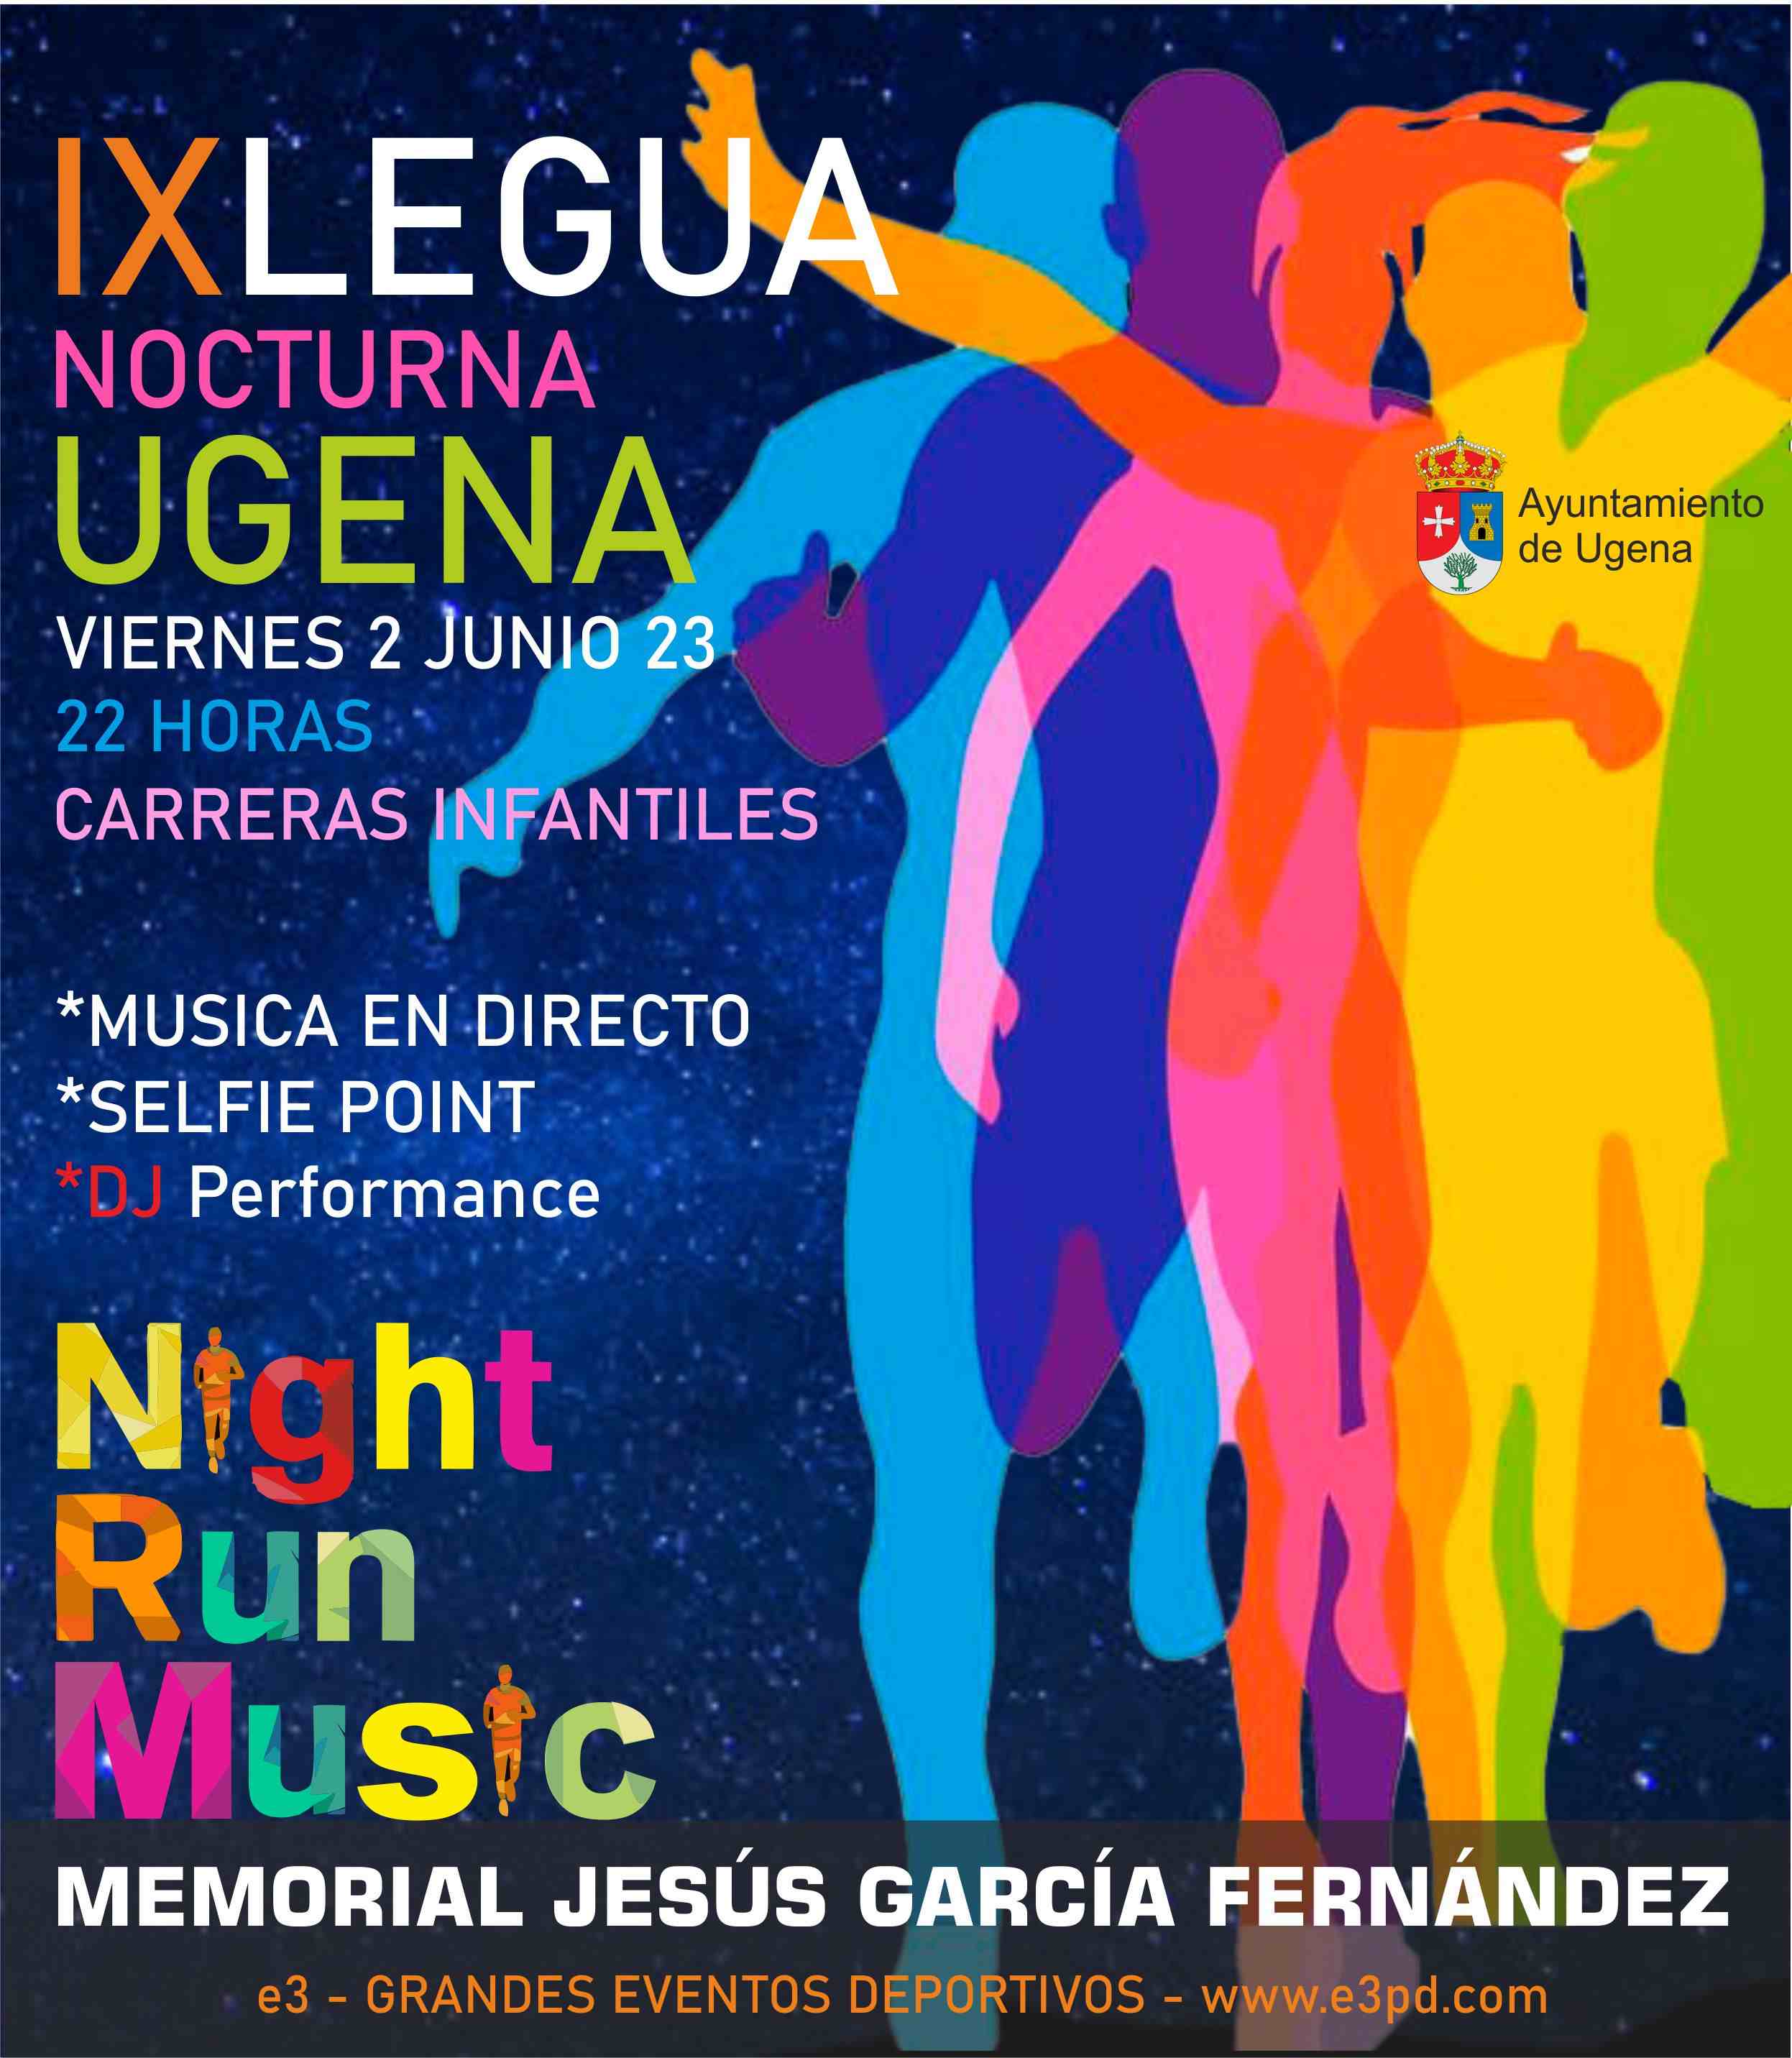 Cartel del evento IX LEGUA NOCTURNA DE UGENA